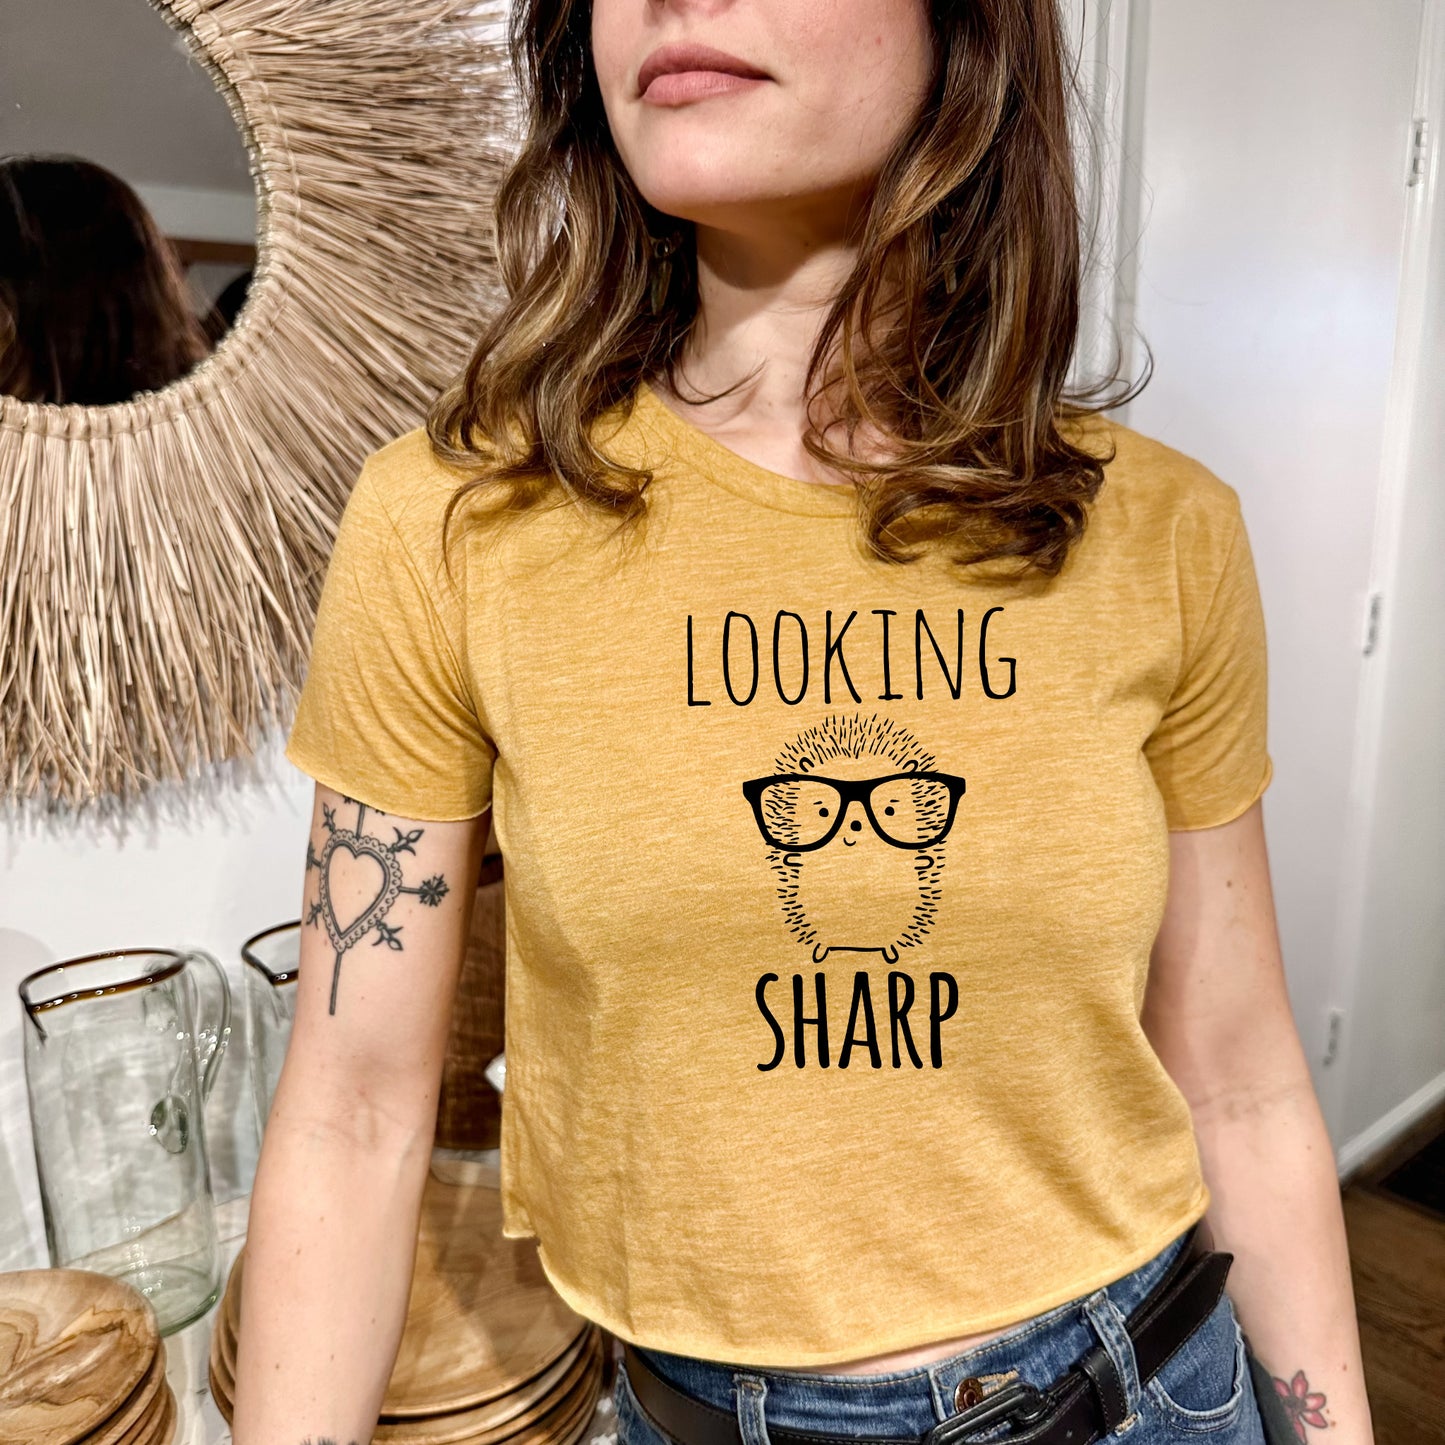 Looking Sharp (Hedgehog) - Women's Crop Tee - Heather Gray or Gold